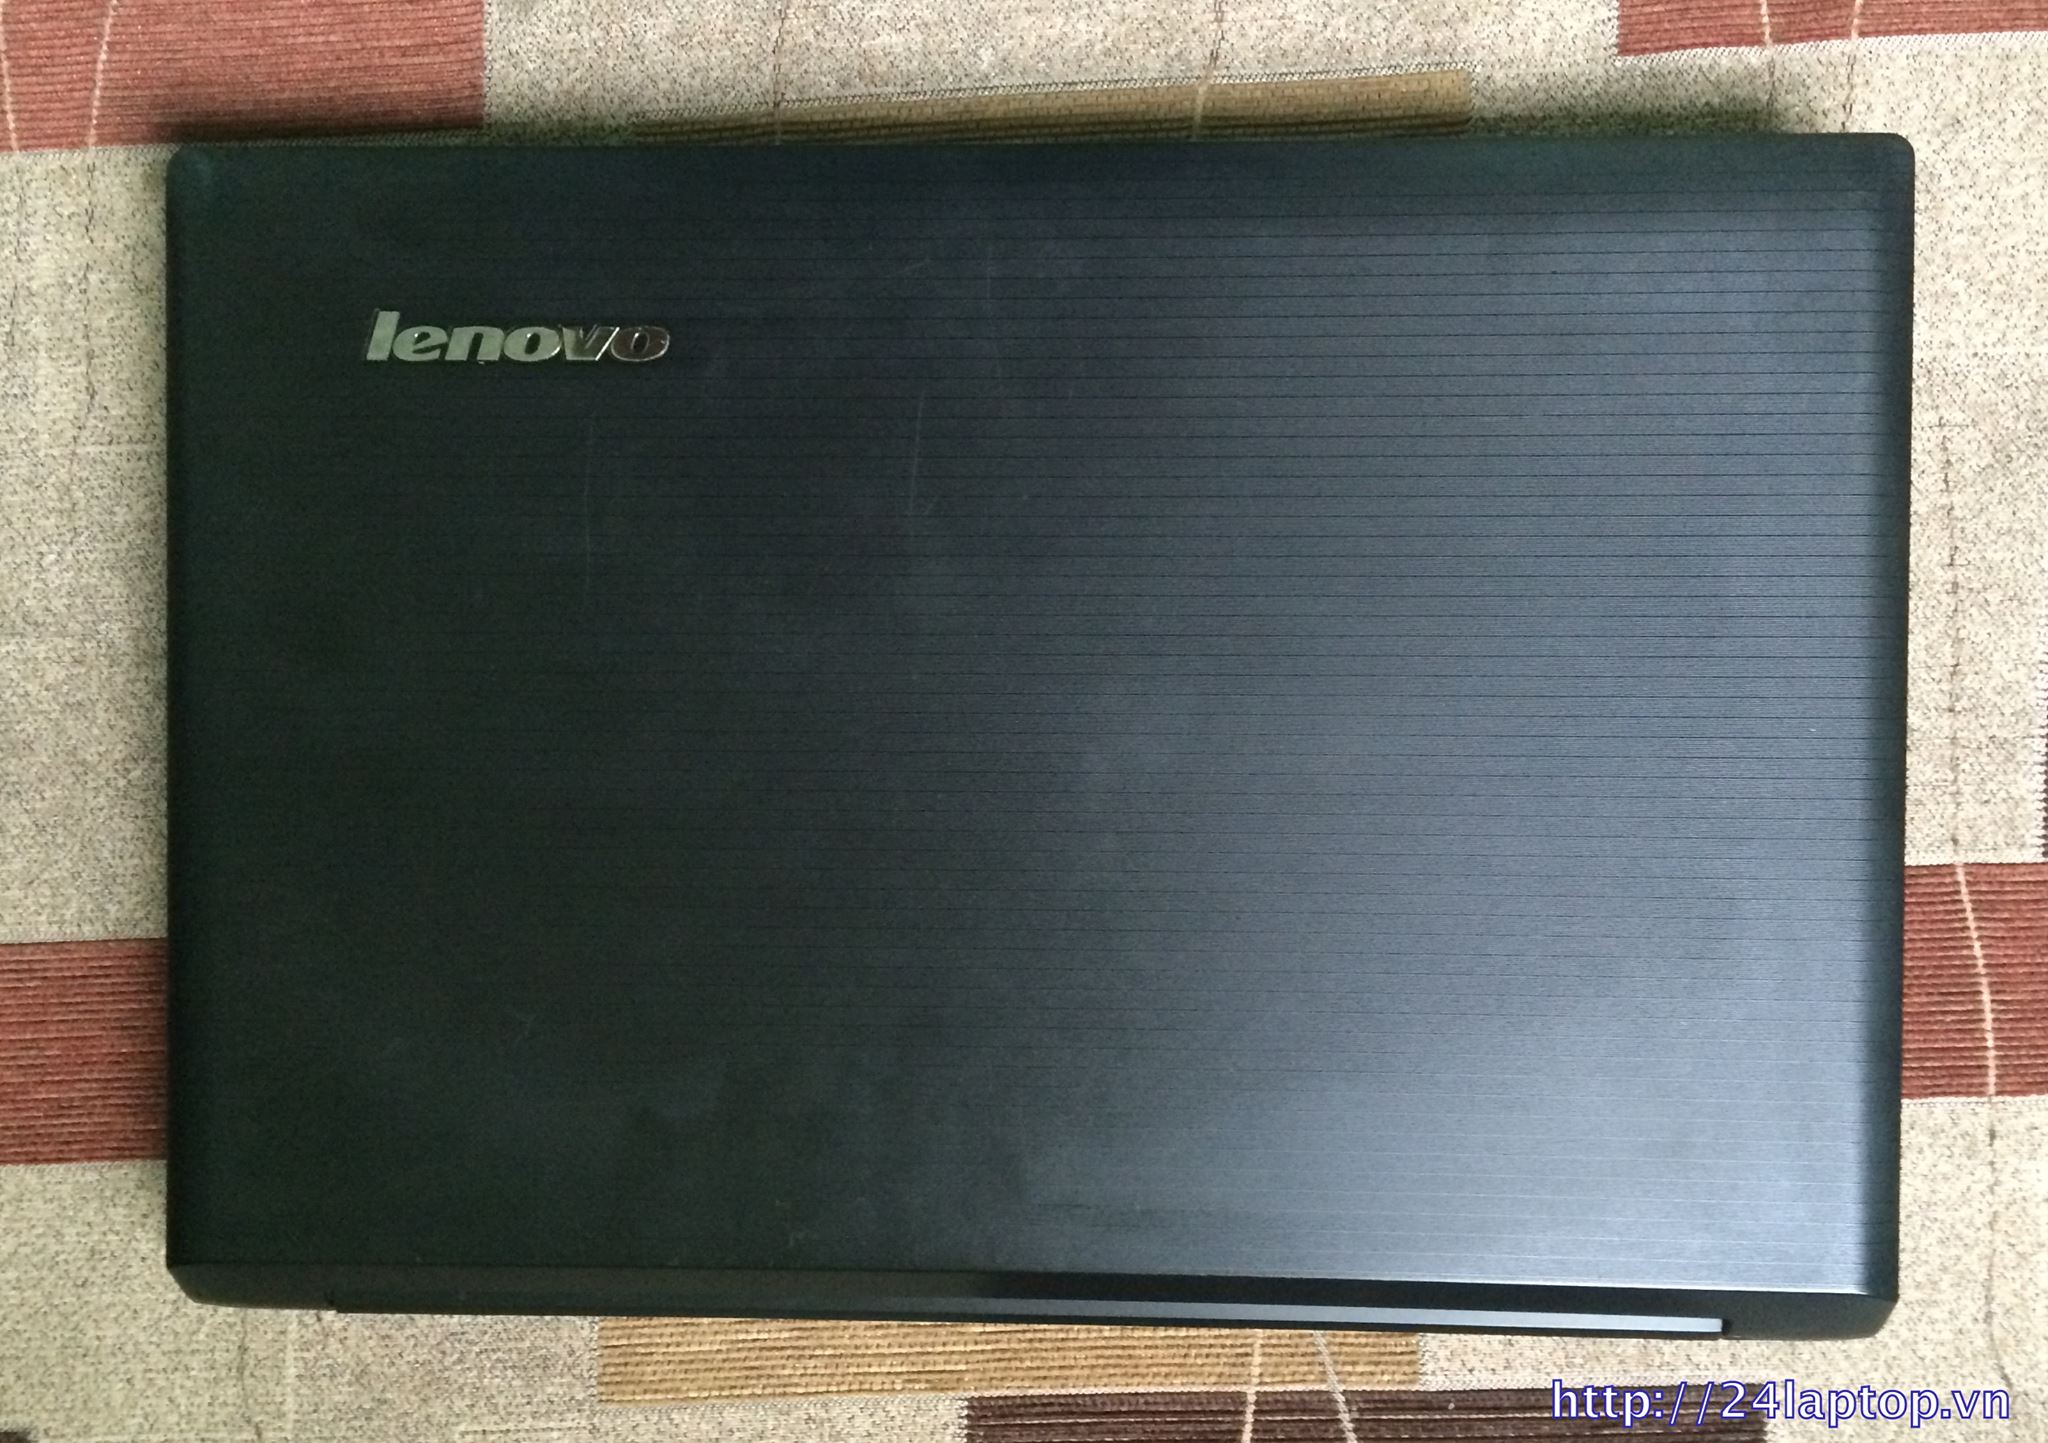 Laptop lenovo b470 cu.jpg